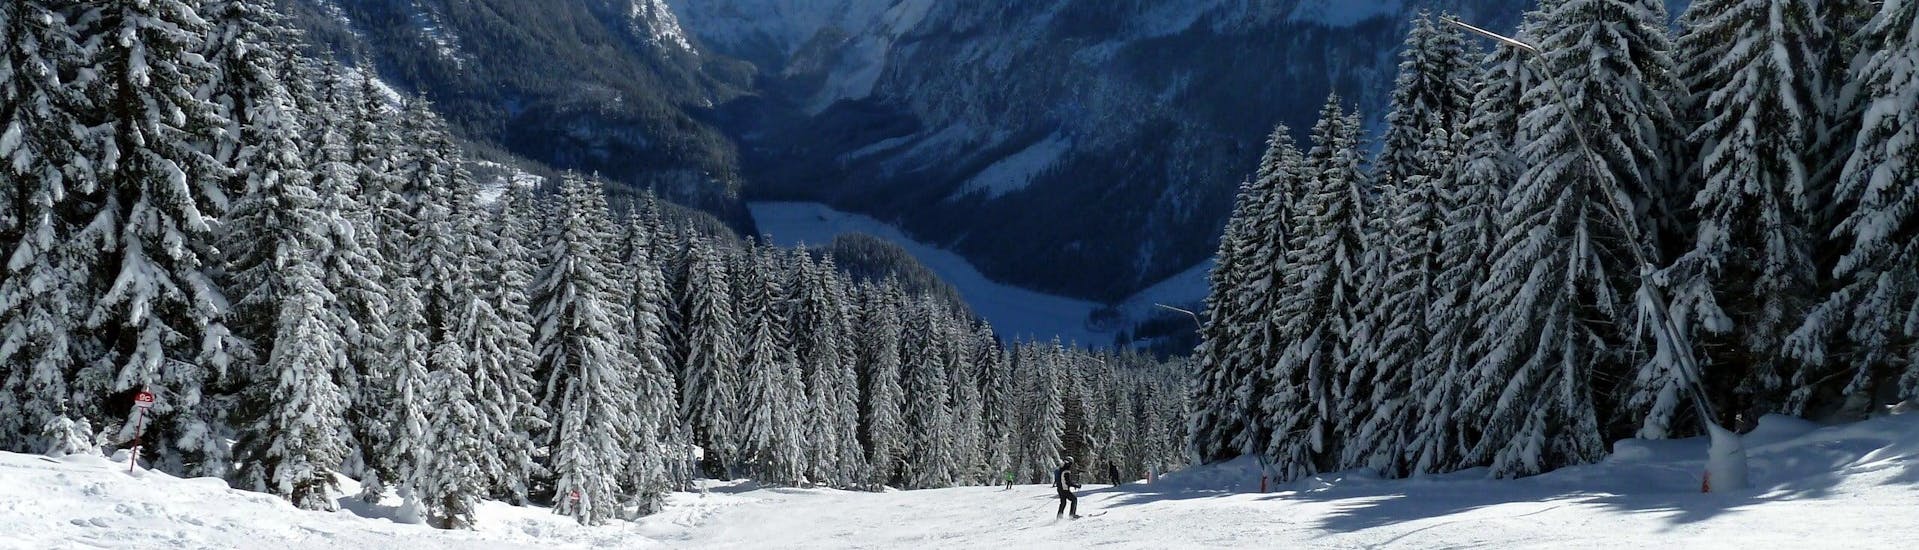 Ausblick auf die sonnige Berglandschaft beim Skifahren lernen mit den Skischulen im Skigebiet Dachstein West.